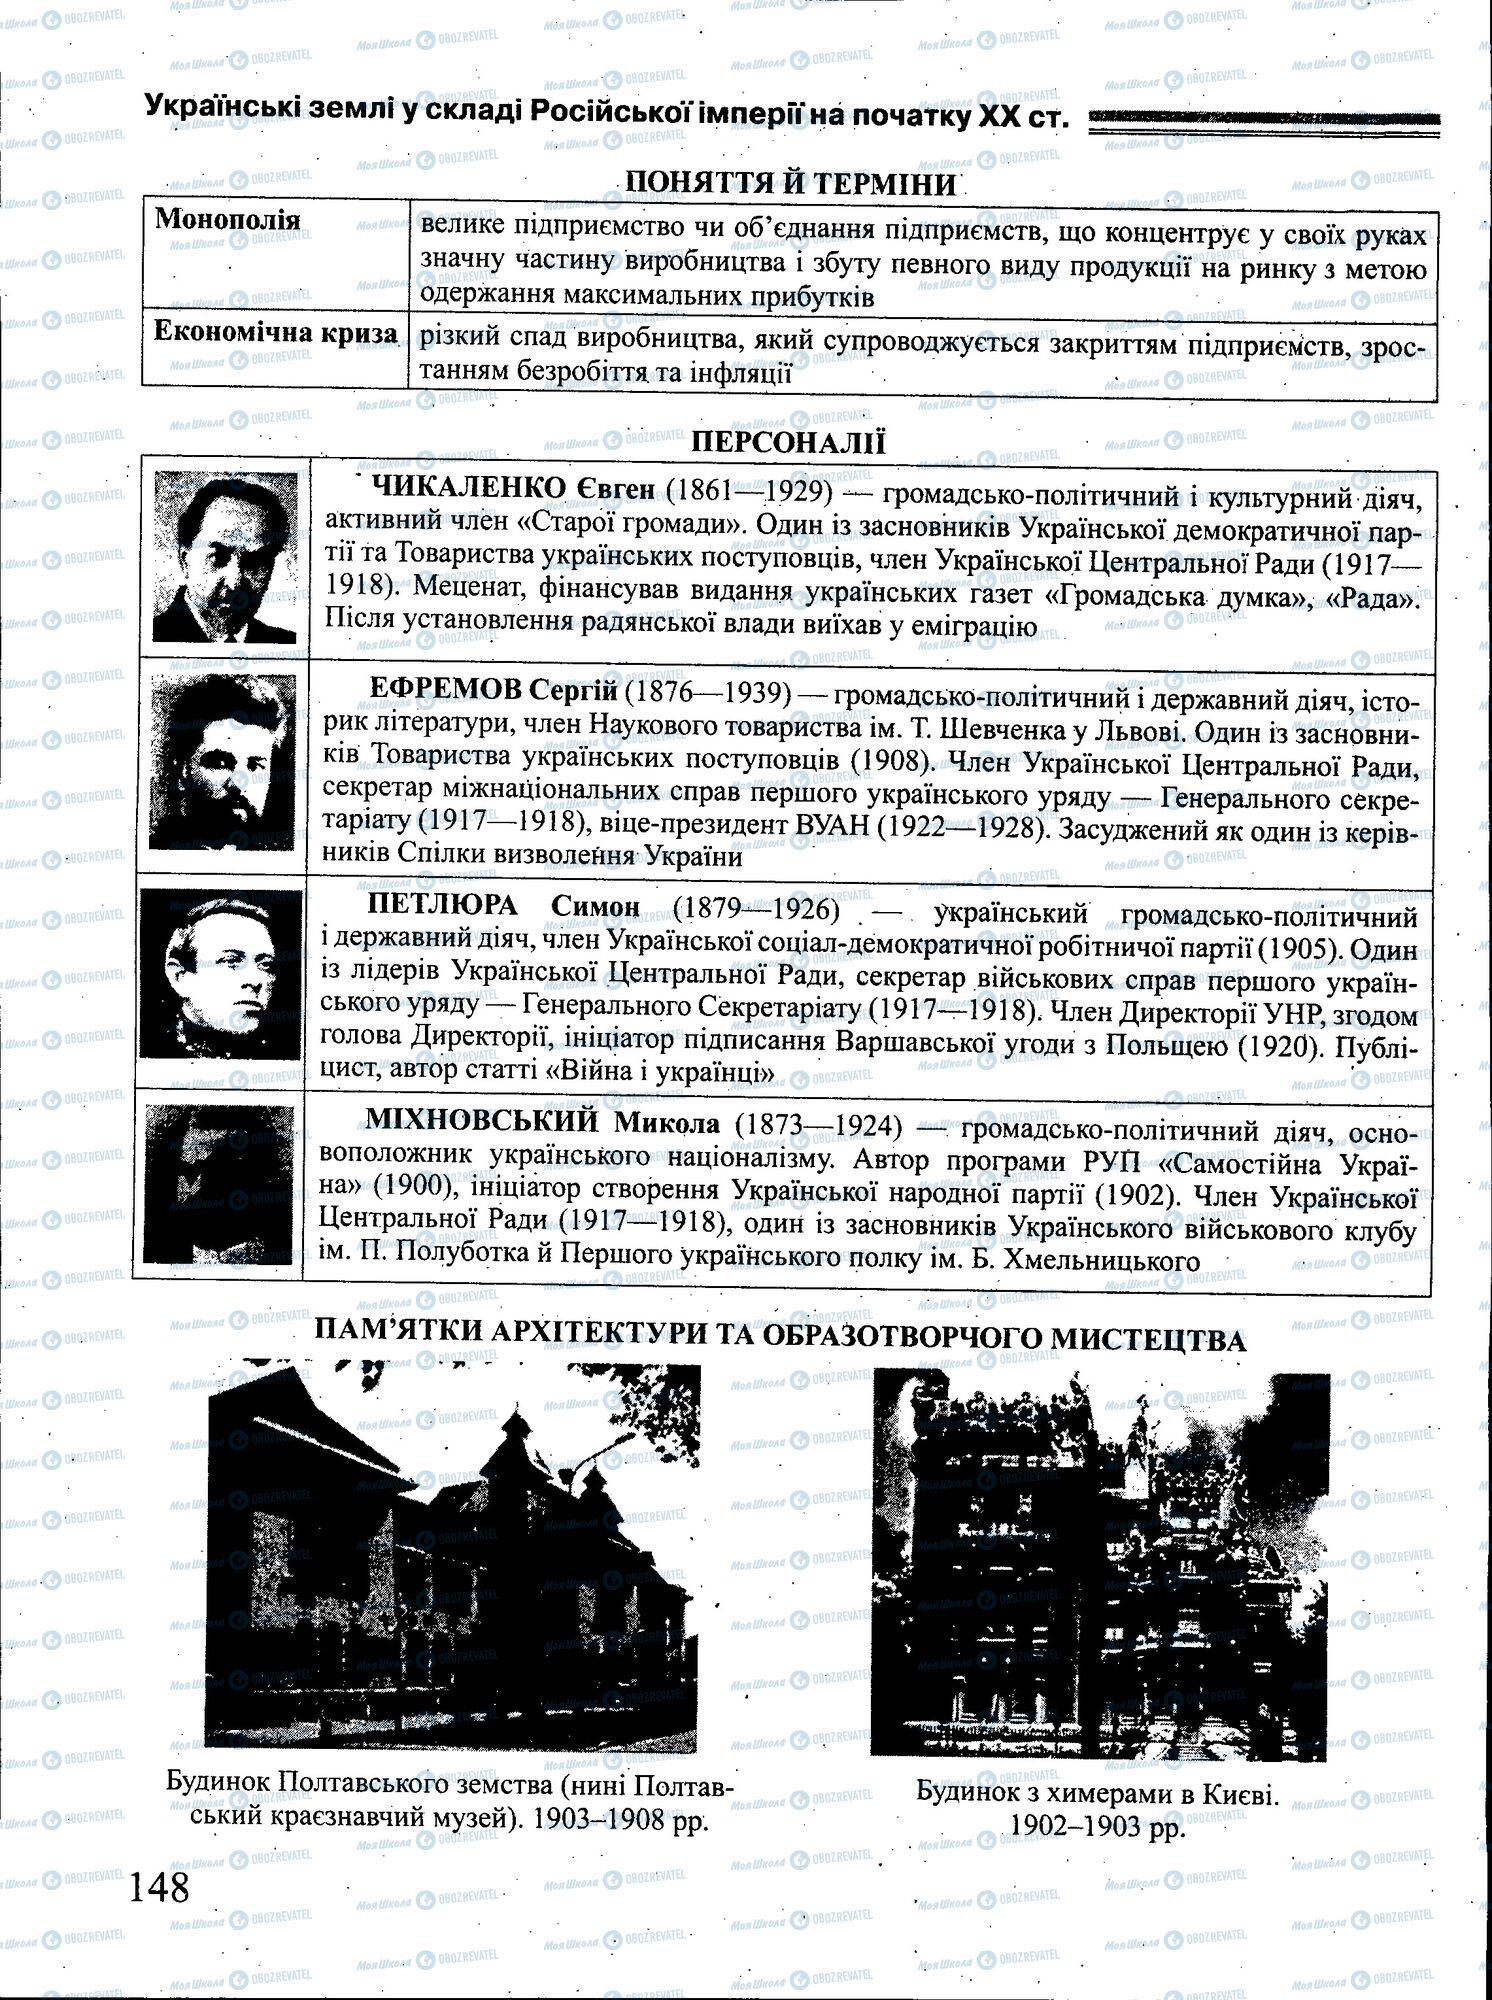 ЗНО История Украины 11 класс страница 148